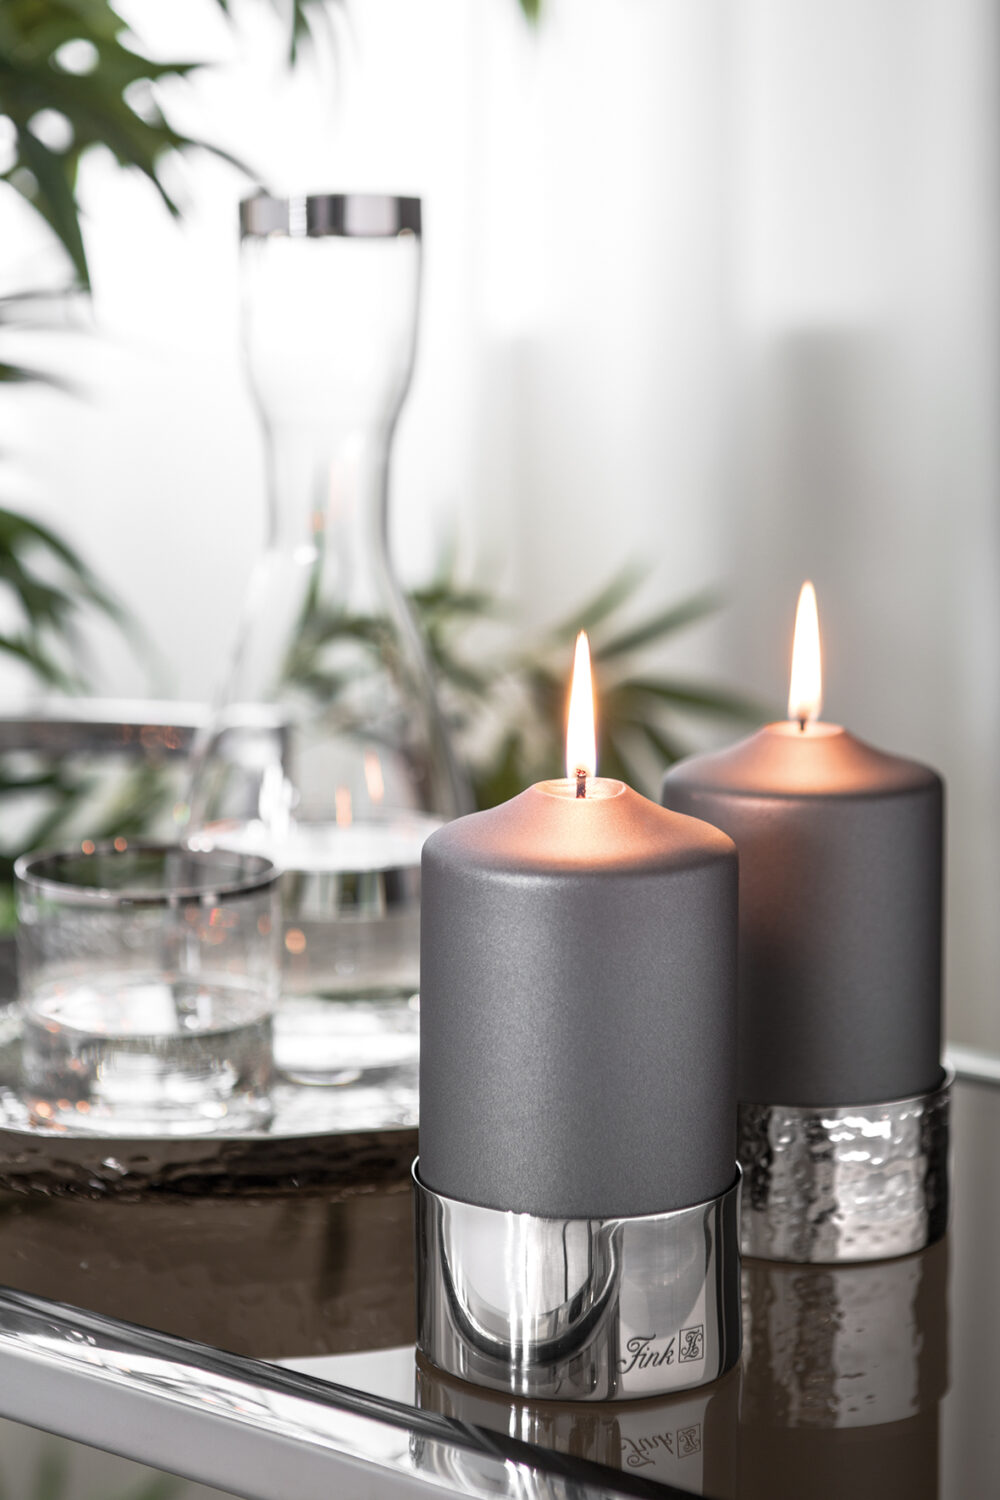 Fink Stumpenkerzen Halter silberfarben für dicke Kerzen Living modern Online kaufen Missforty